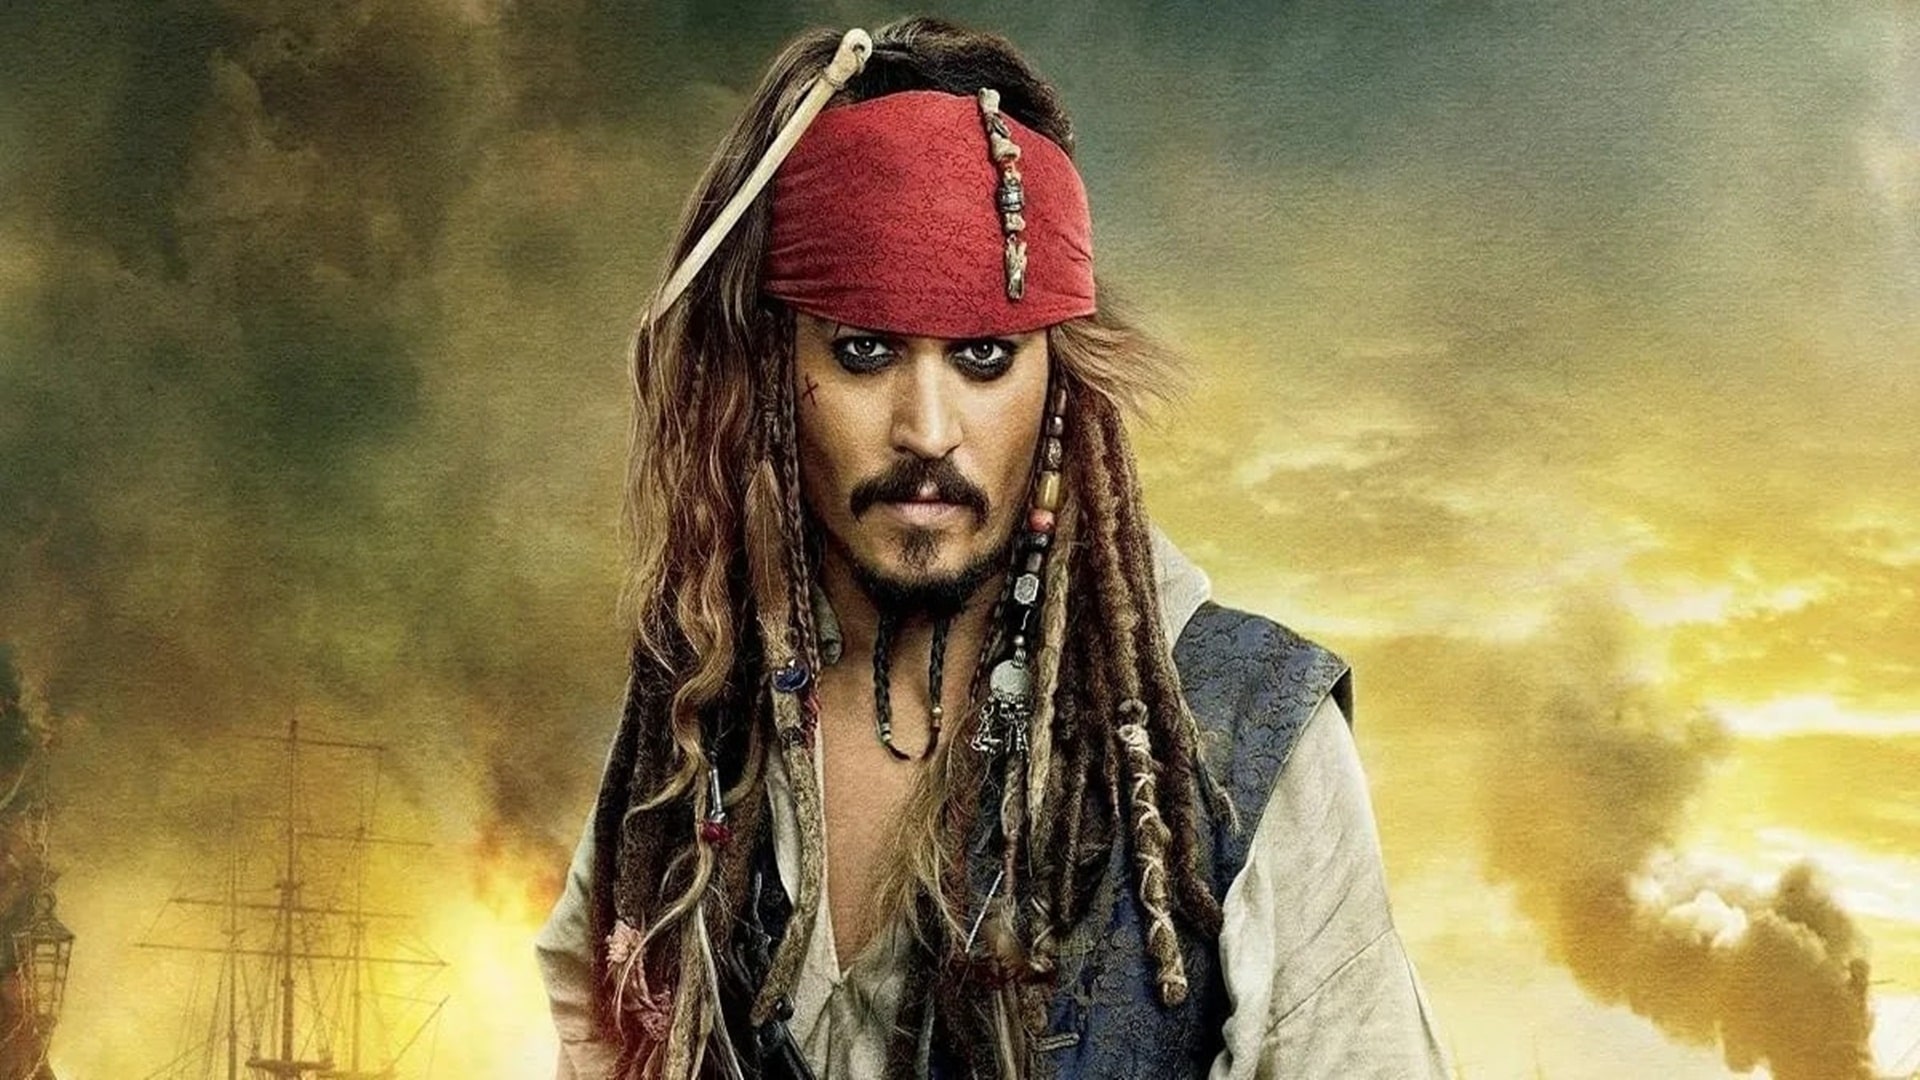 Usuarios en redes sociales piden que Disney y Warner se disculpen públicamente con Johnny Depp, GamersRD